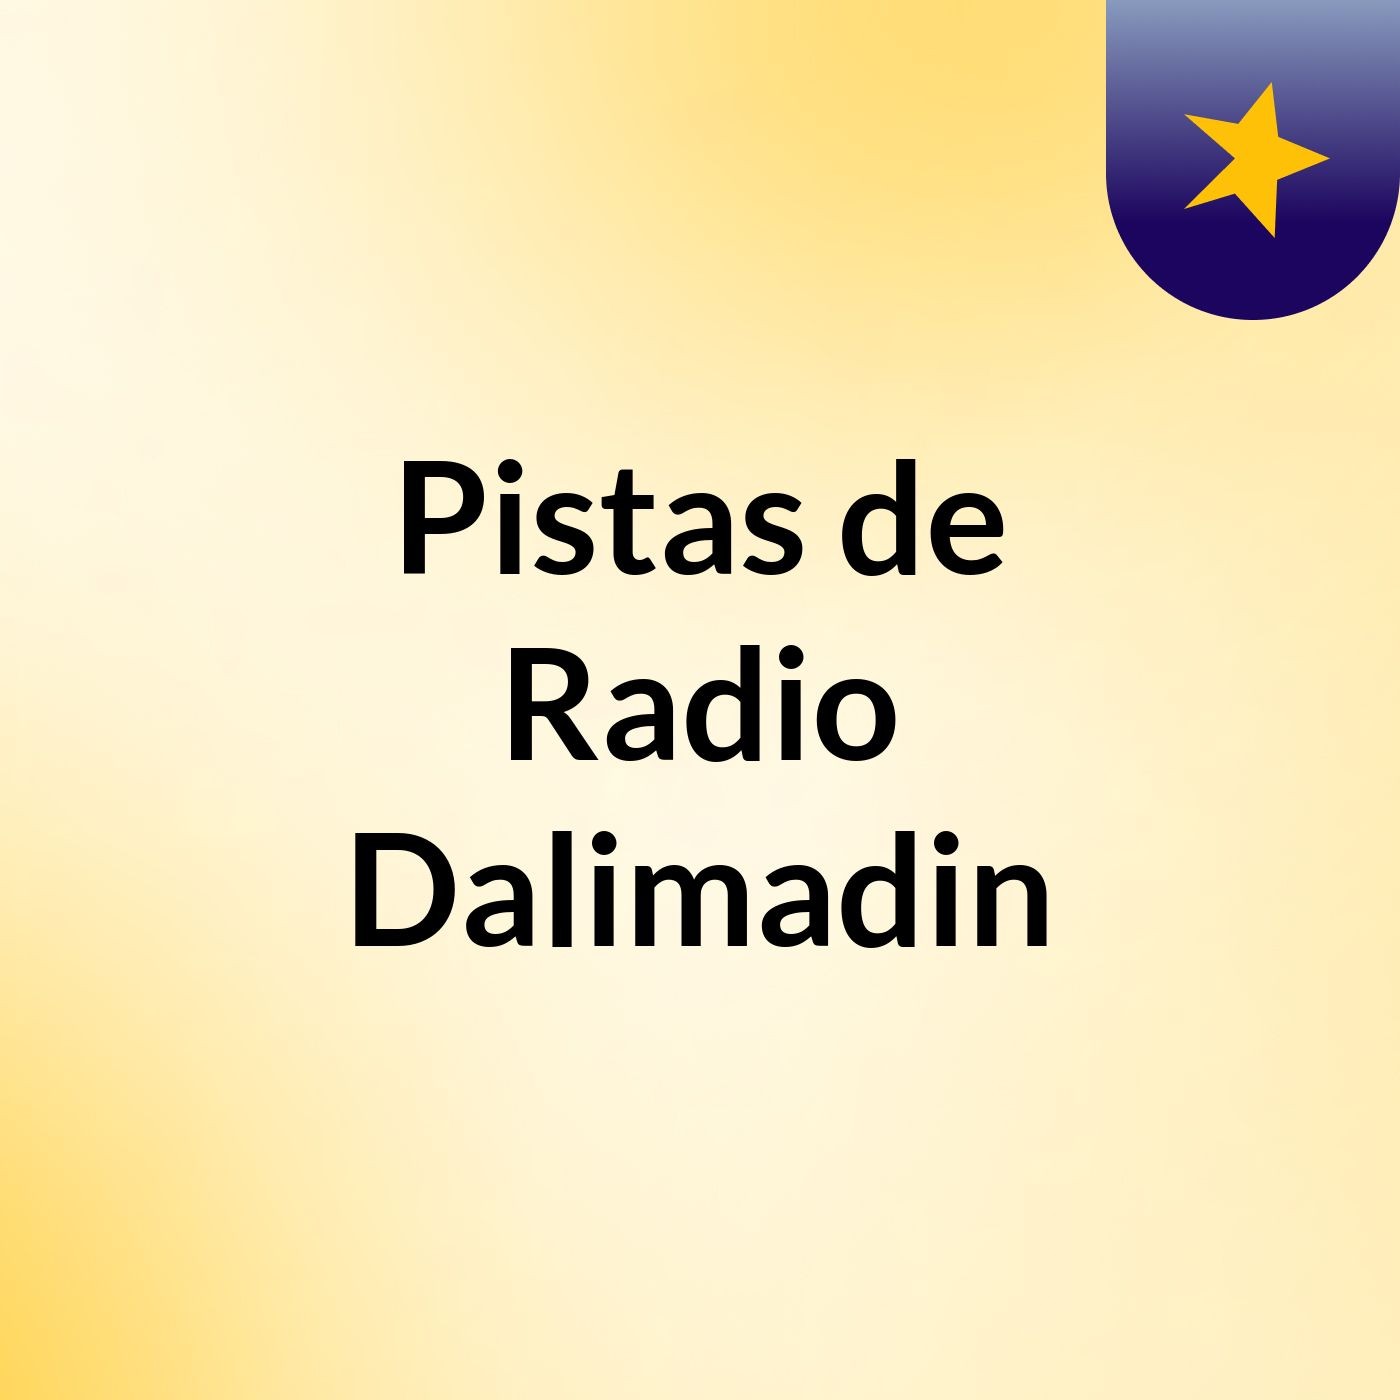 Pistas de Radio Dalimadin